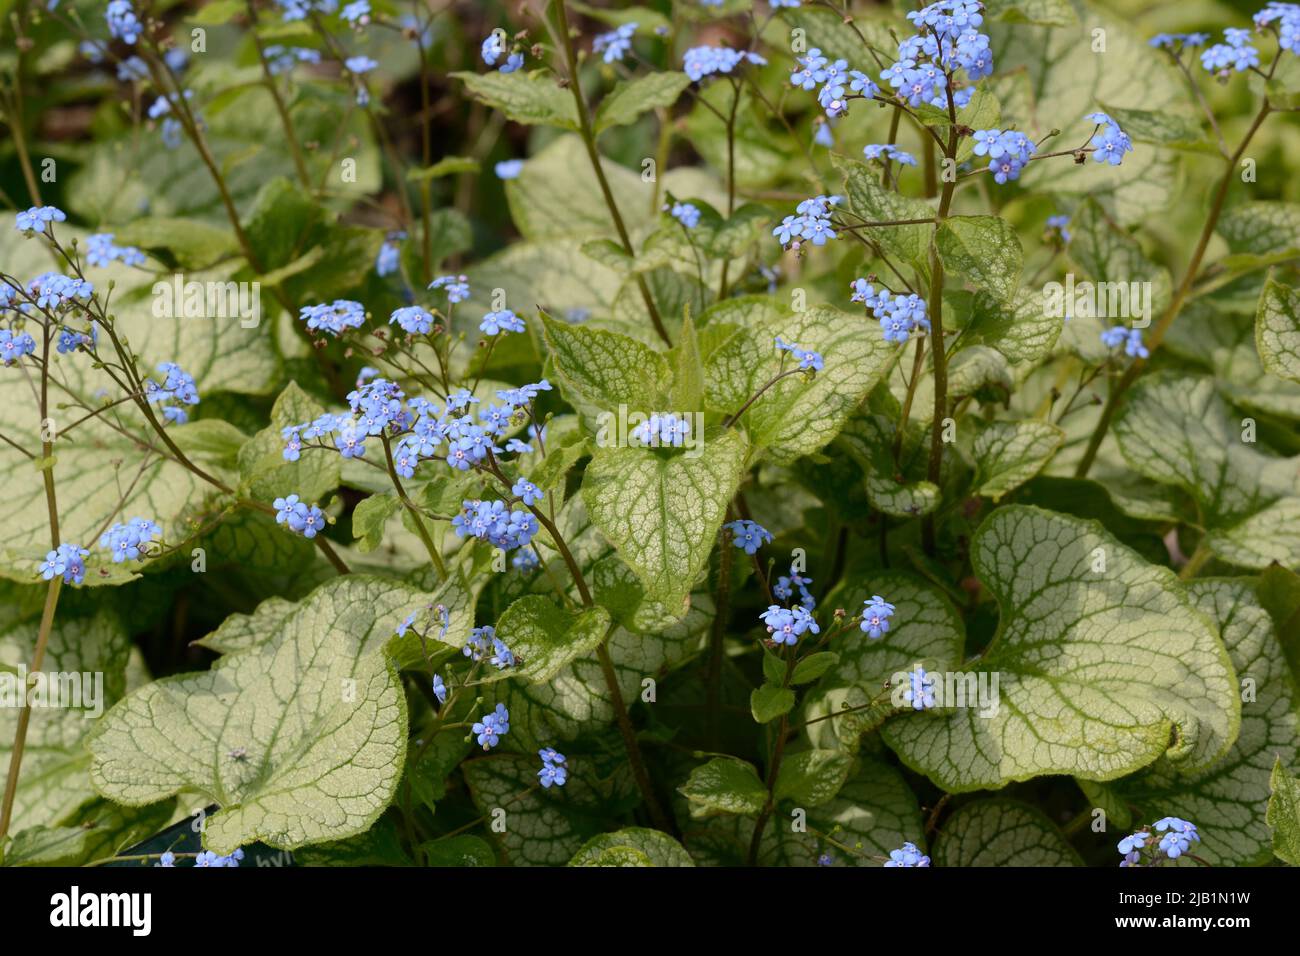 Brummera macrophylla Jack Frost beaucoup de petites fleurs bleu vif feuillage en forme de coeur avec des nervures vertes Banque D'Images